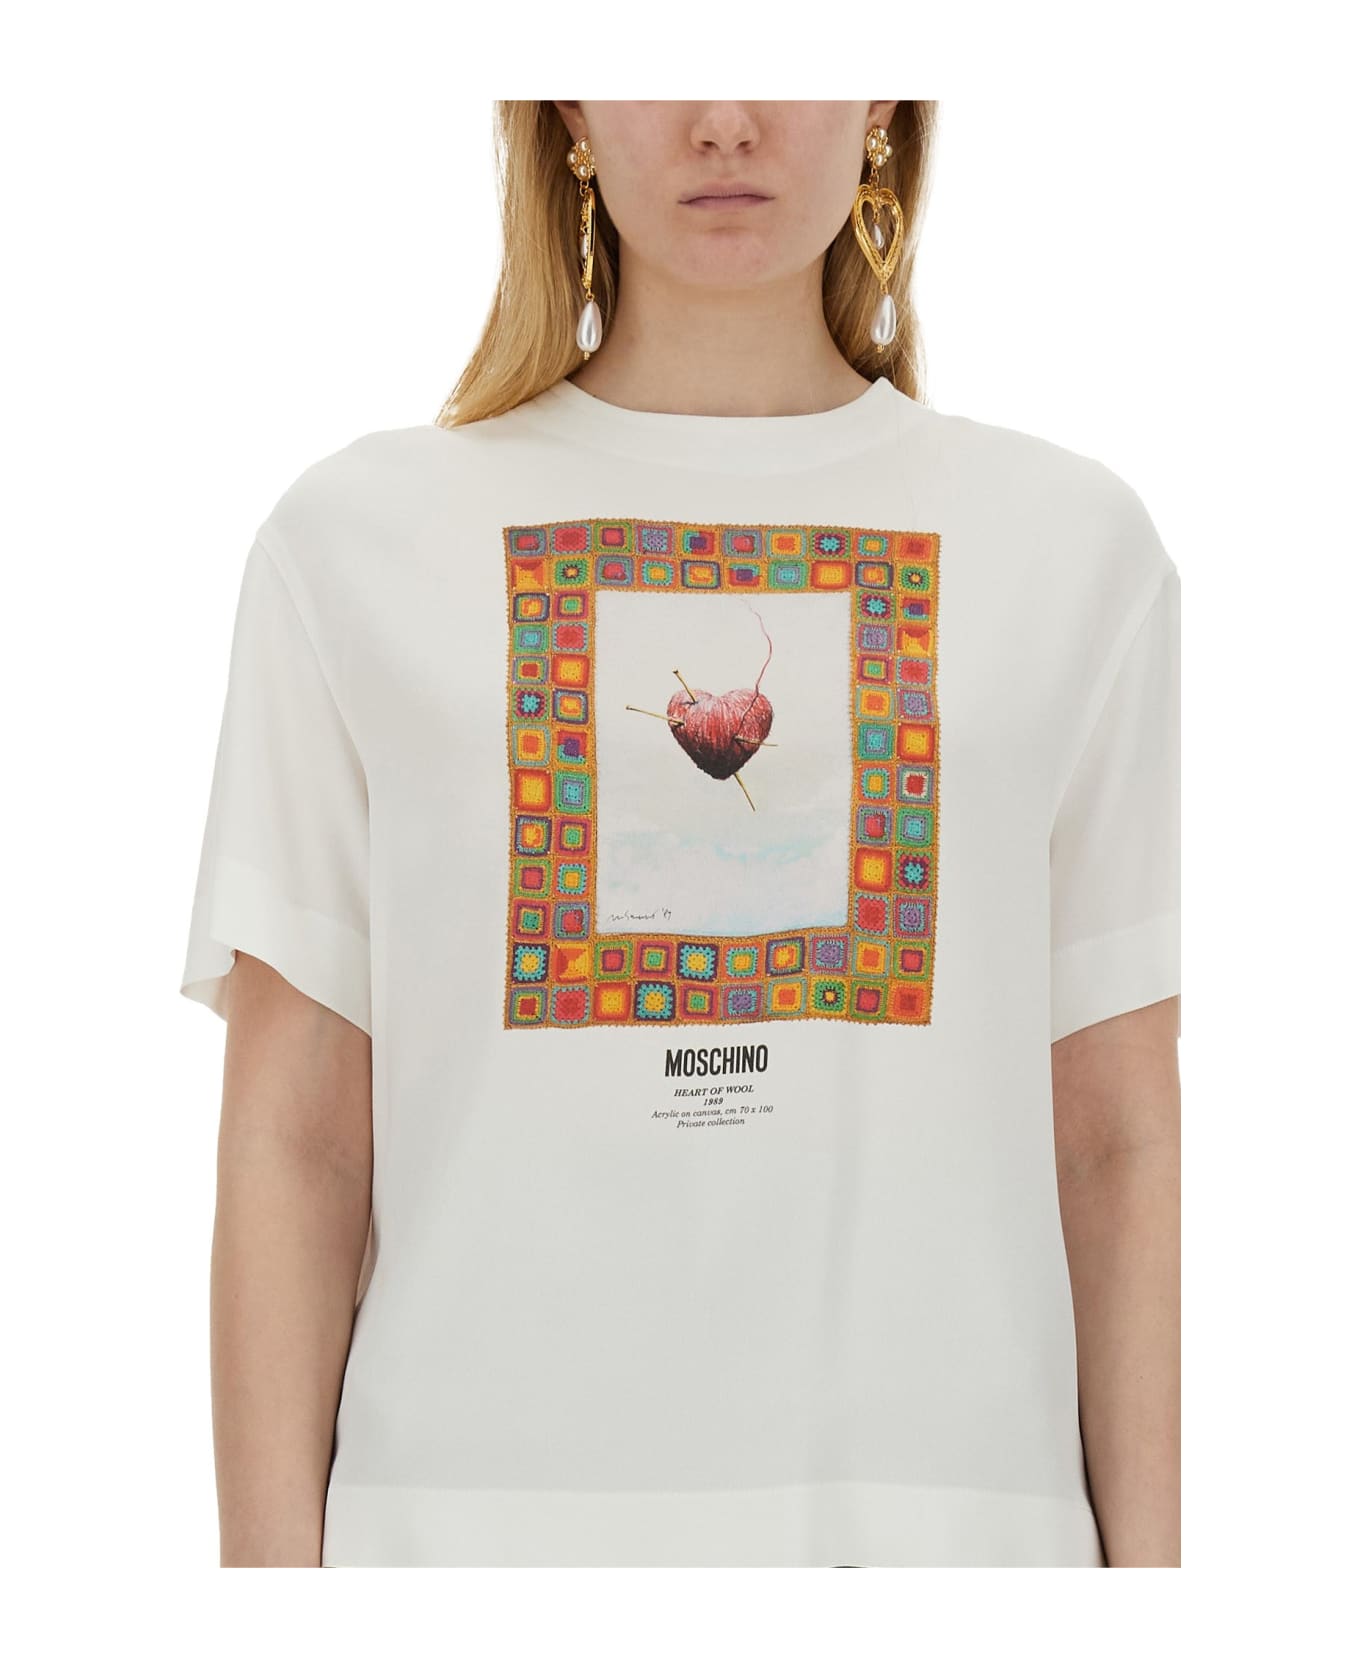 Moschino T-shirt 'heart' - White Tシャツ